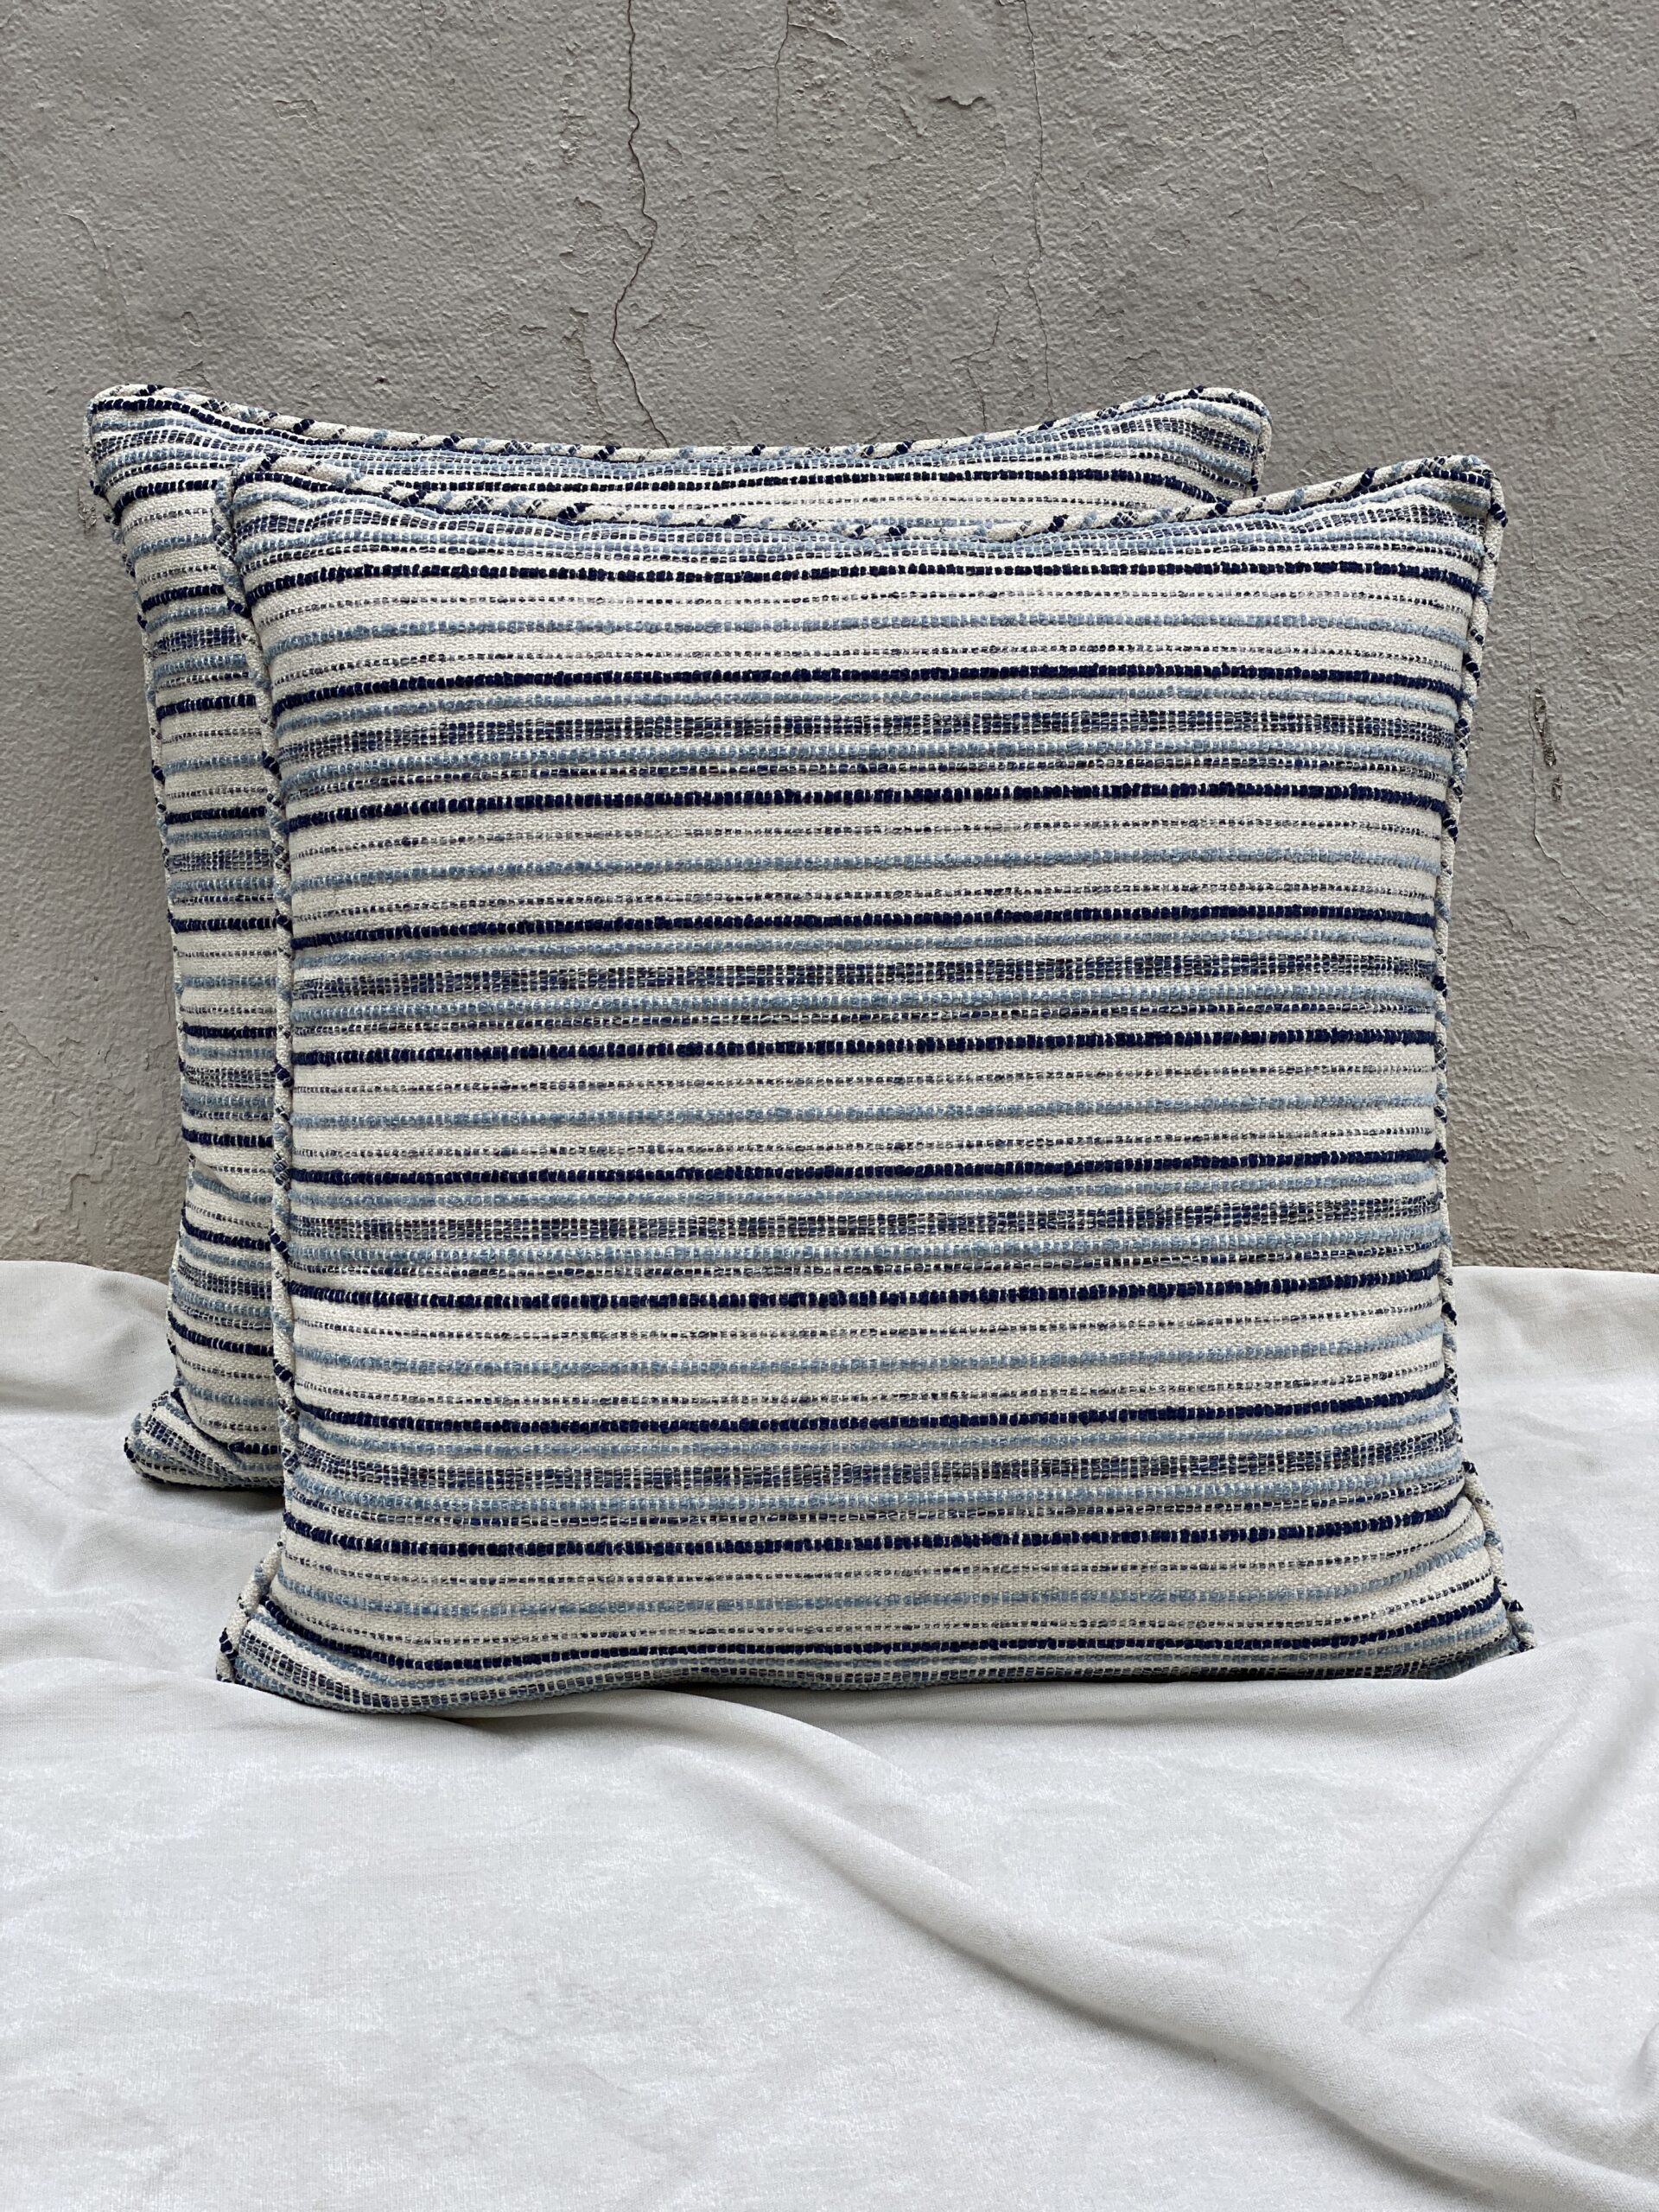 CR Laine Square Pillows